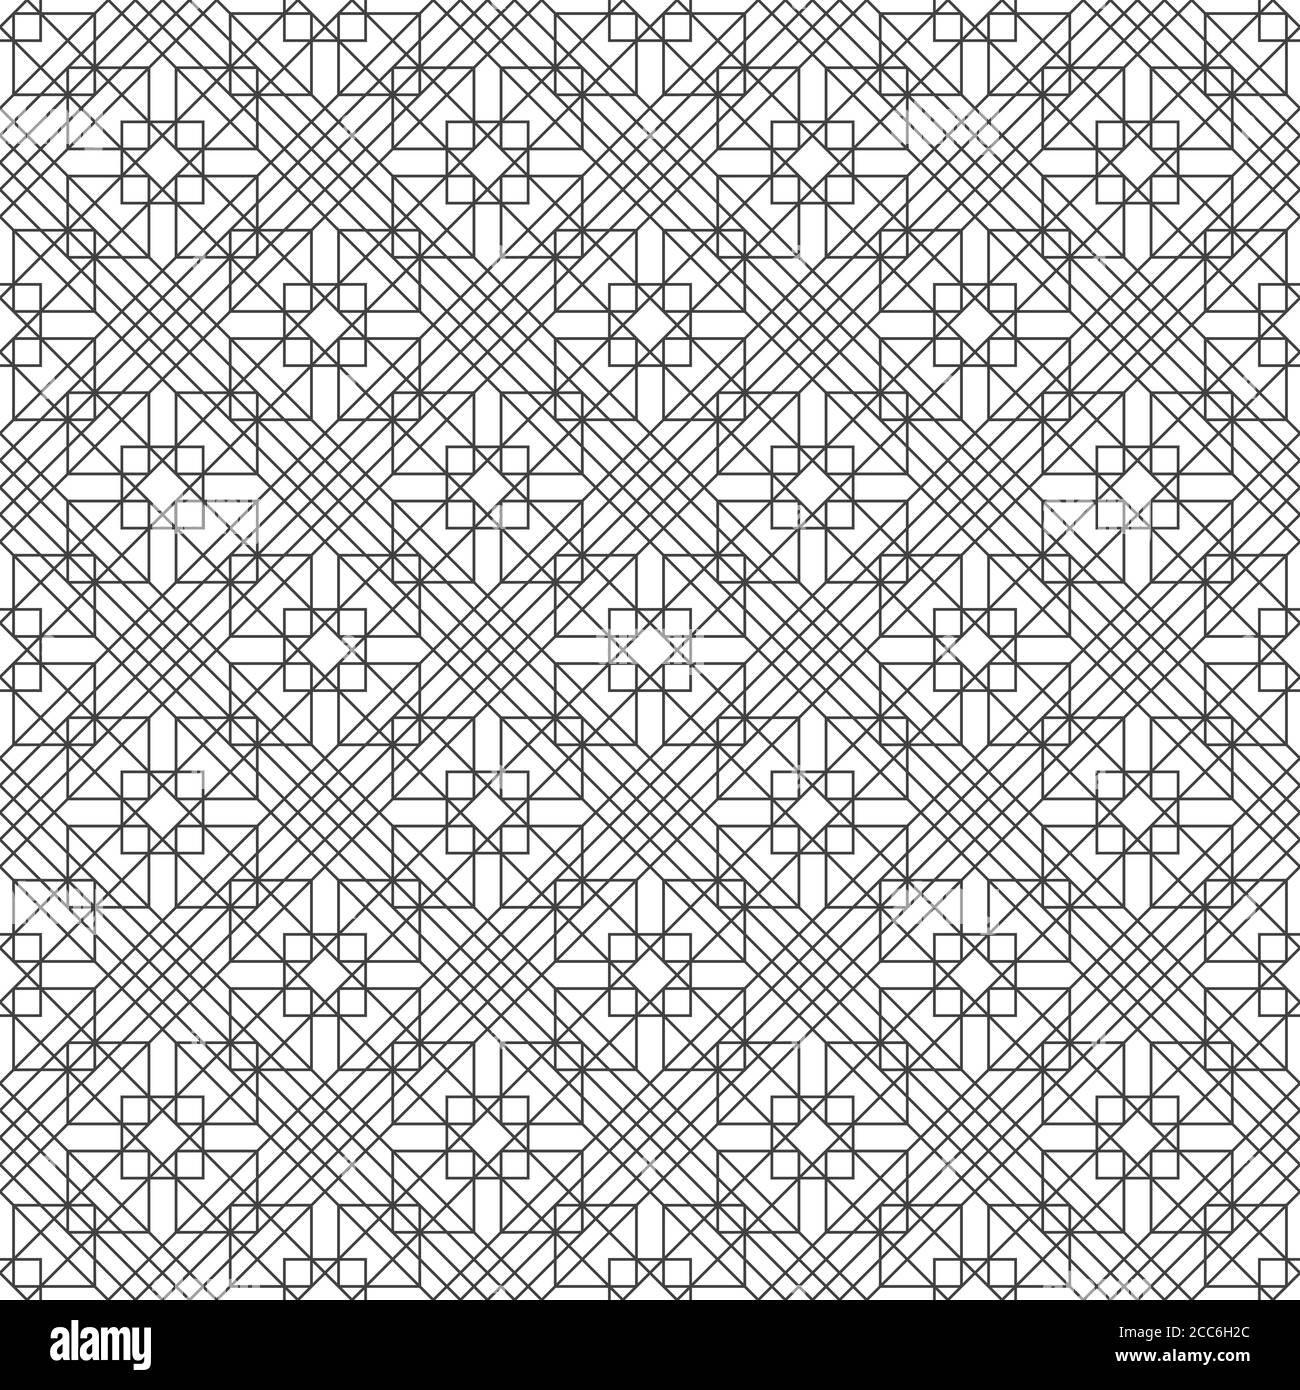 Nahtloses Muster. Moderne stilvolle Textur mit sich kreuzenden dünnen Linien. Regelmäßig wiederholendes geometrisches gefliestes Gitter mit Rauten, Diamanten, Quadraten. V Stock Vektor